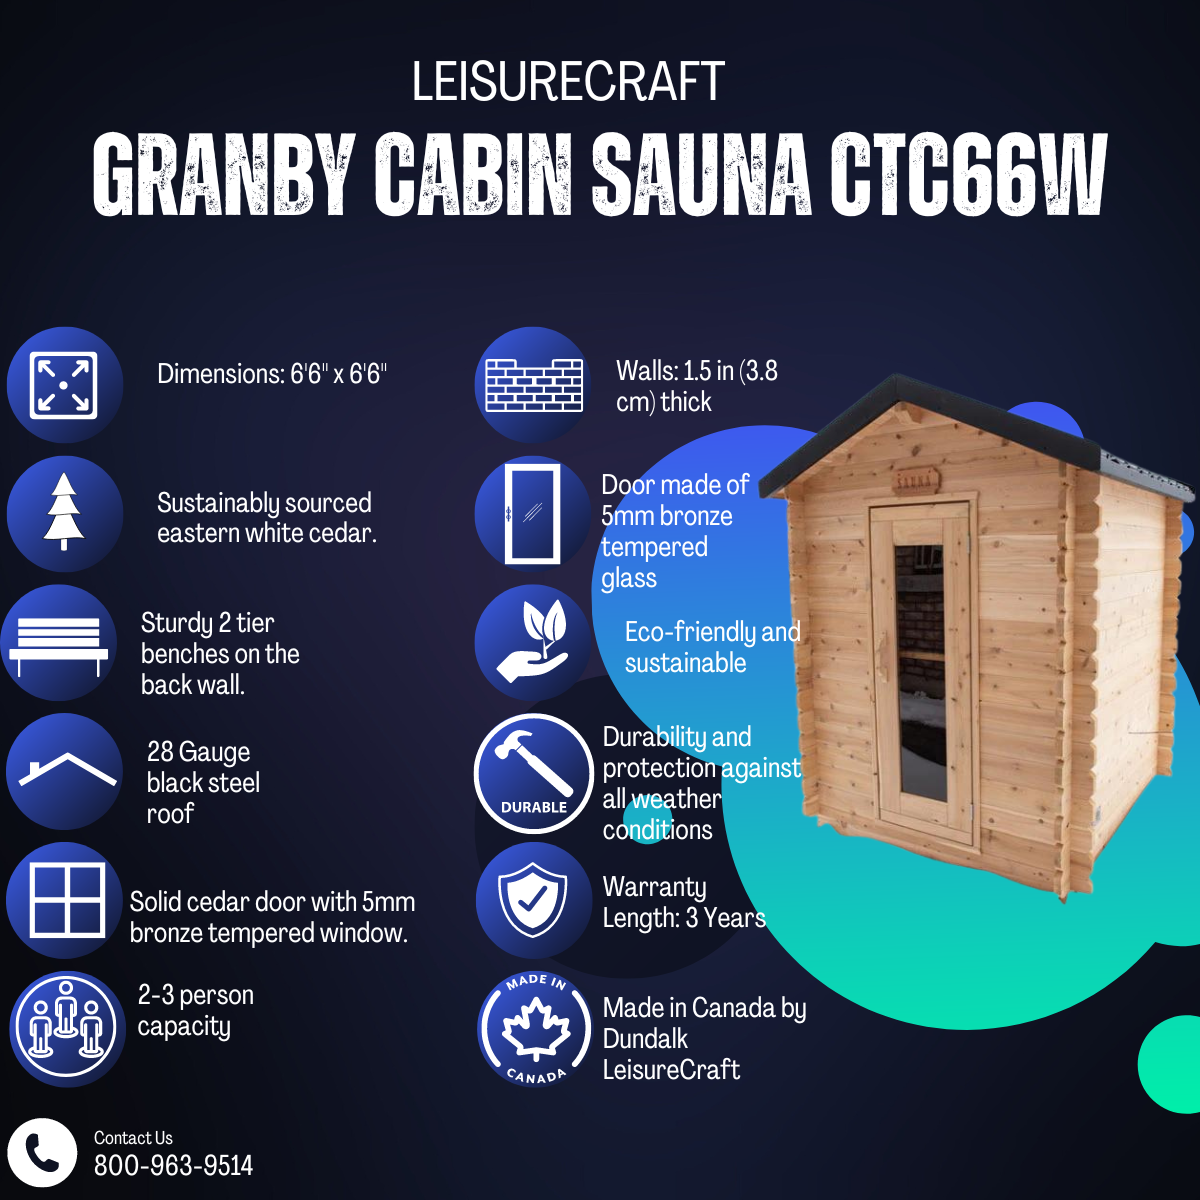 Dundalk Leisurecraft Granby Cabin Sauna CTC66W